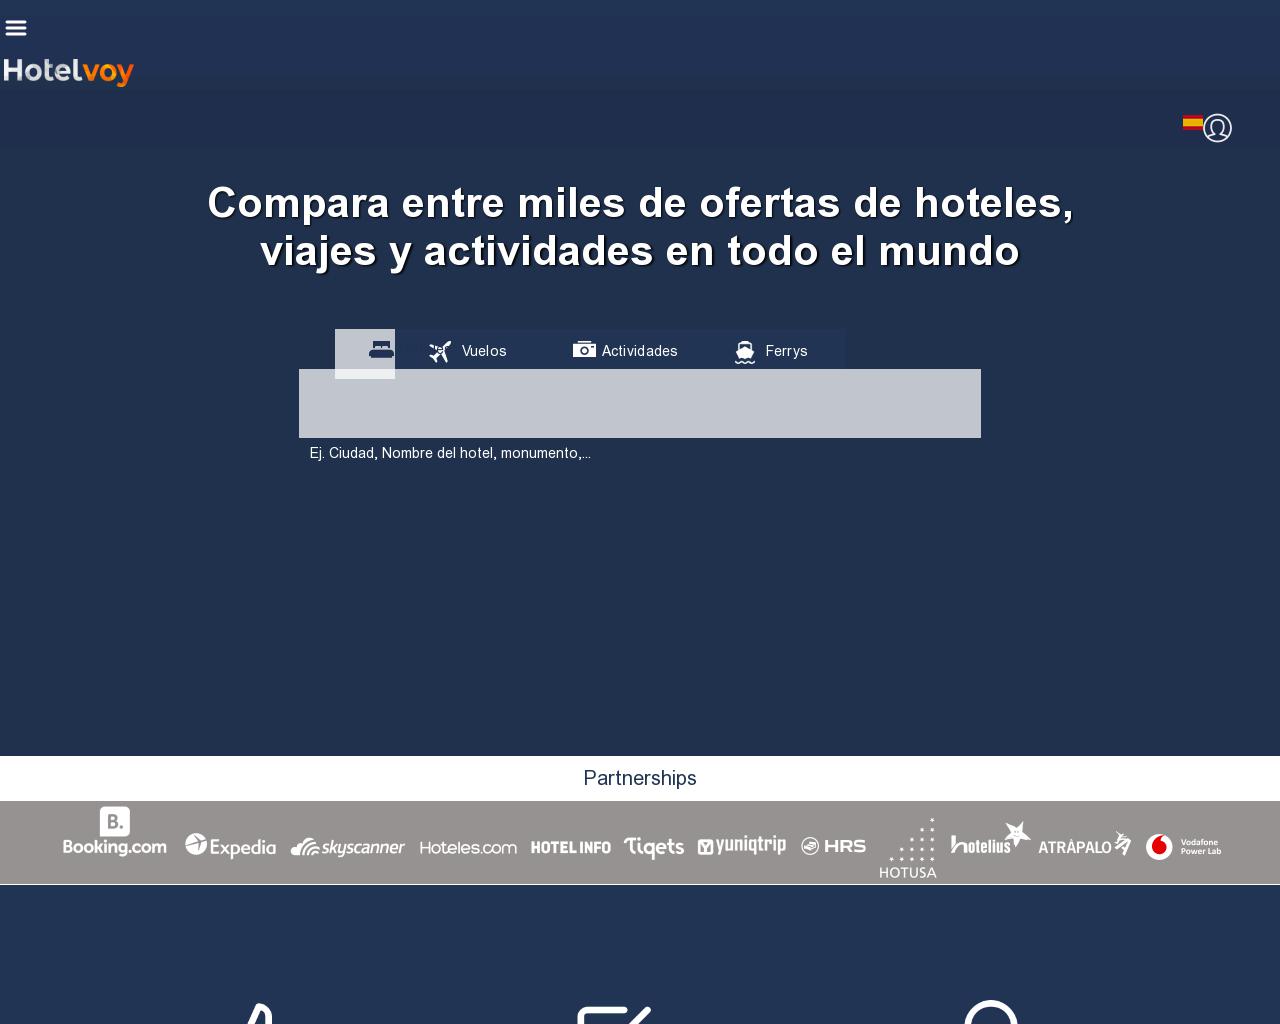 hotelvoy.es